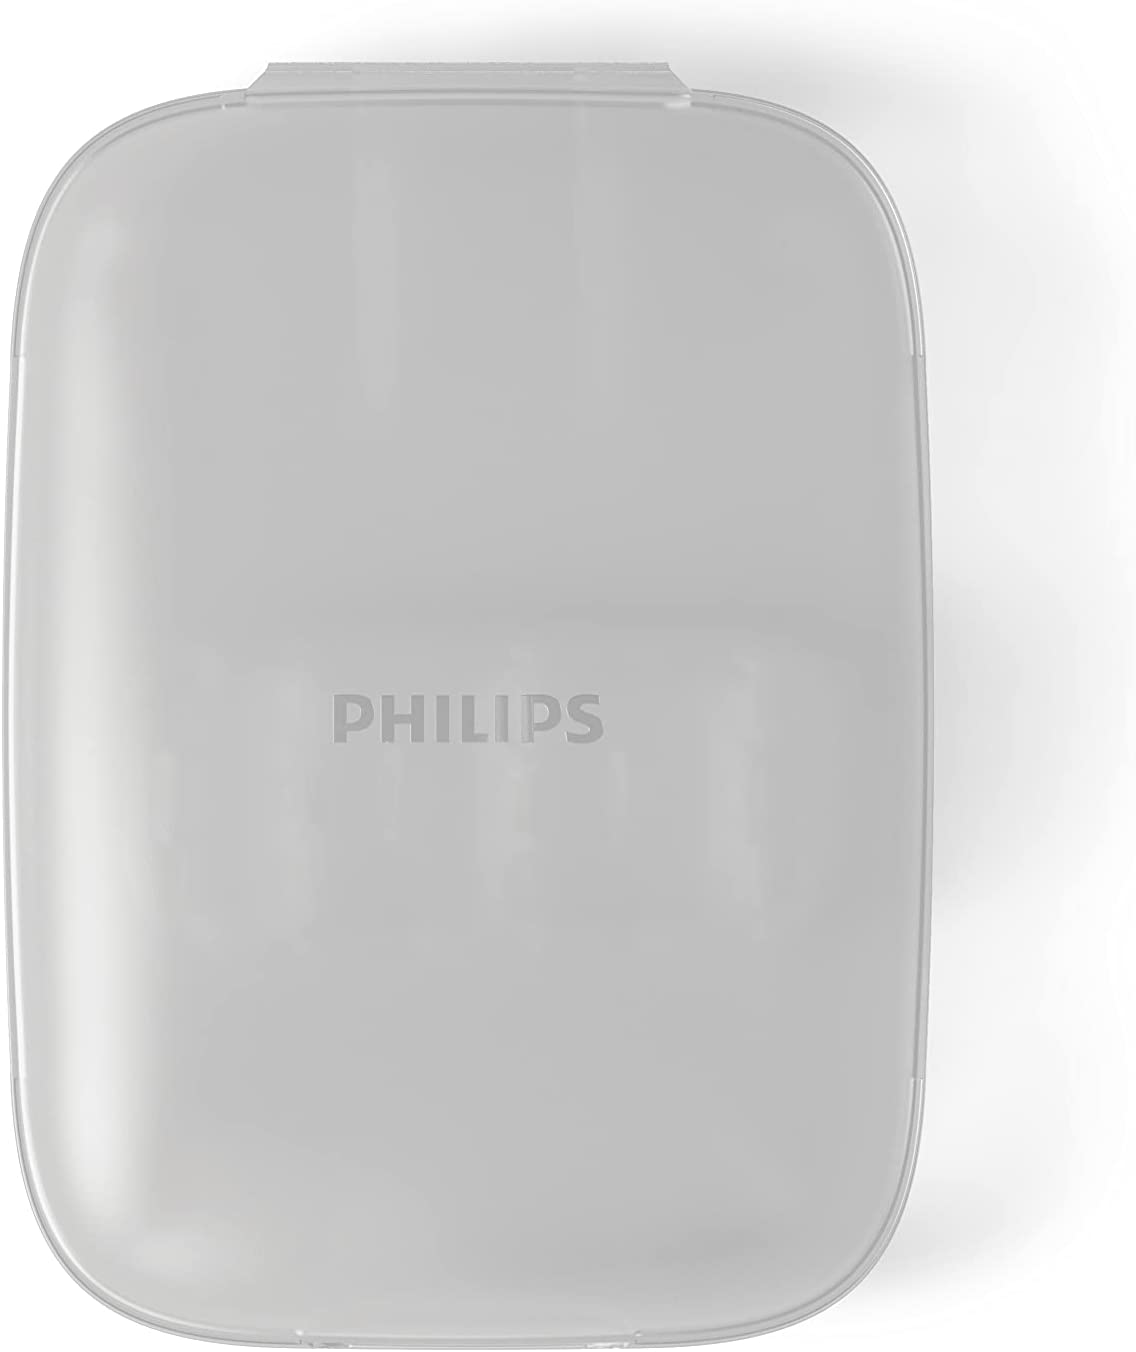 فلوسر پاور فیلیپس سونیکار مدل Philips HX3921/40 - ارسال 15 الی 18 روز کاری